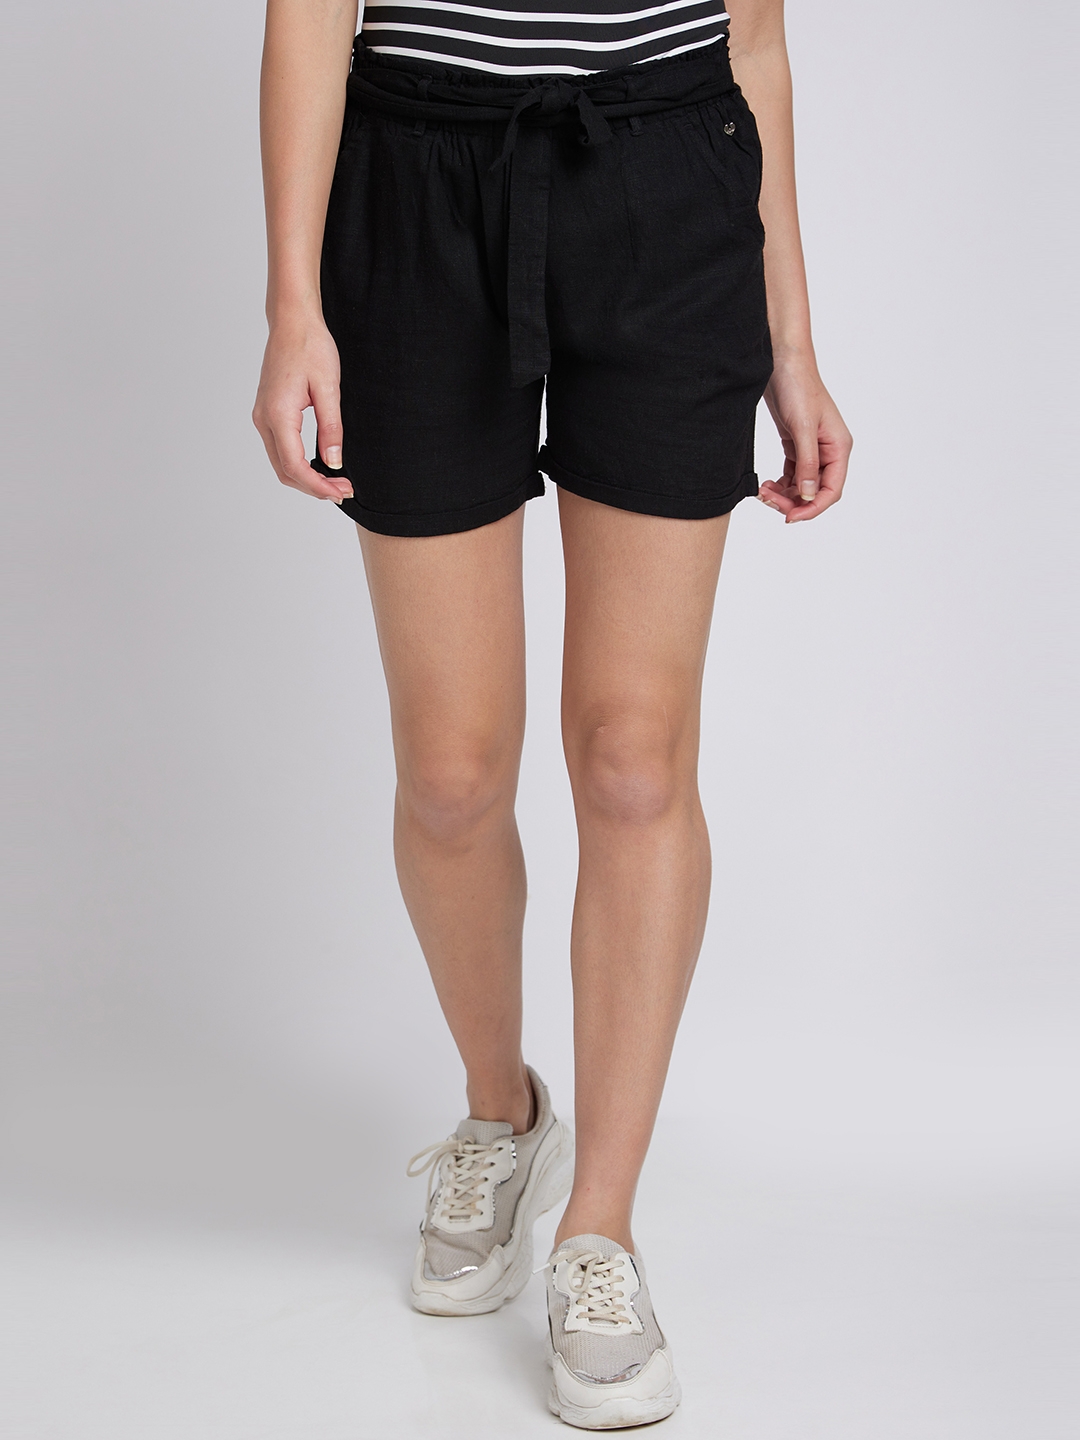 Women's Black Cotton Blend Solid Shorts